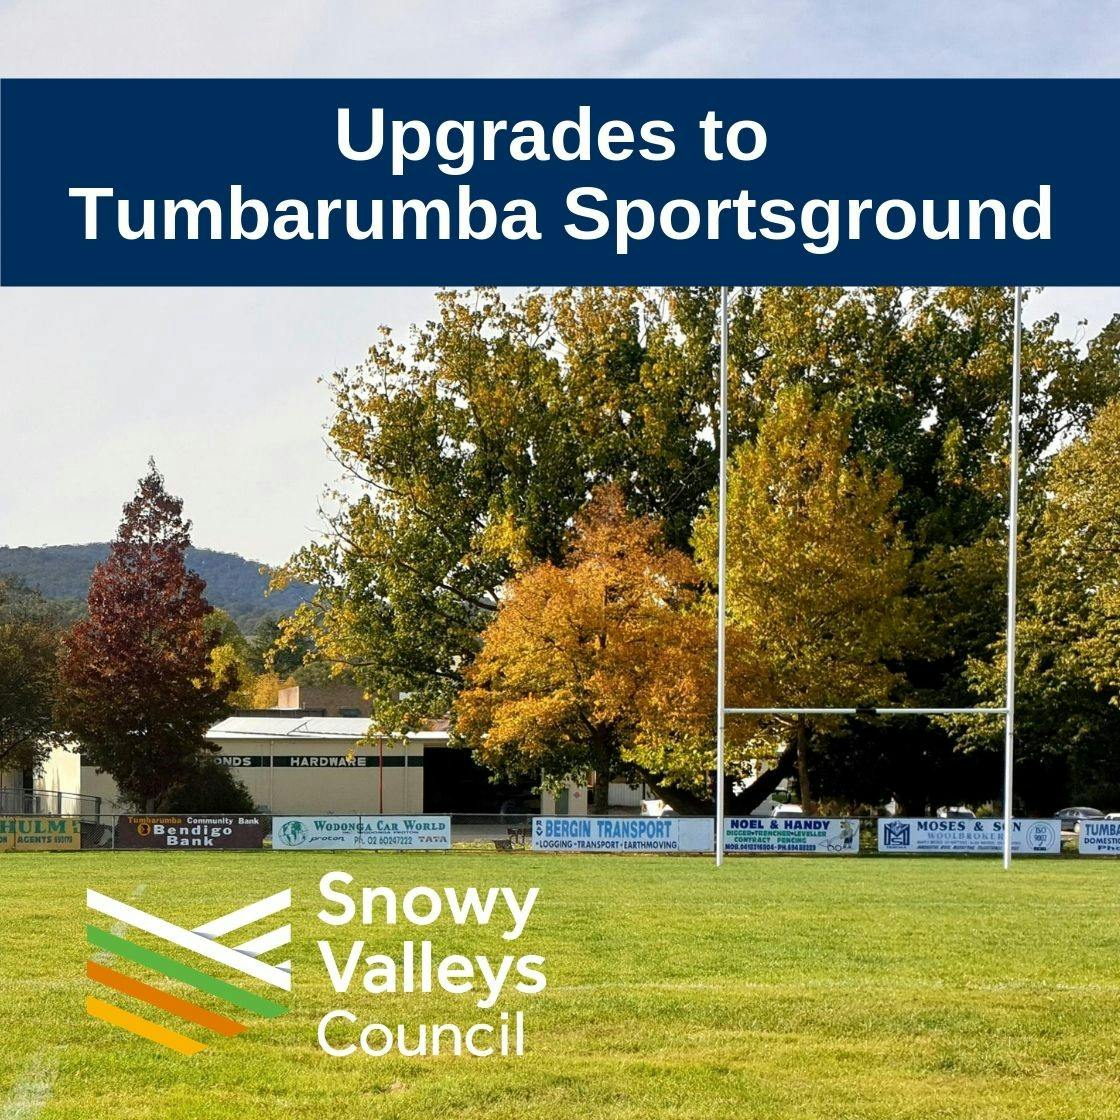 Upgrades to Tumbarumba Sportsground